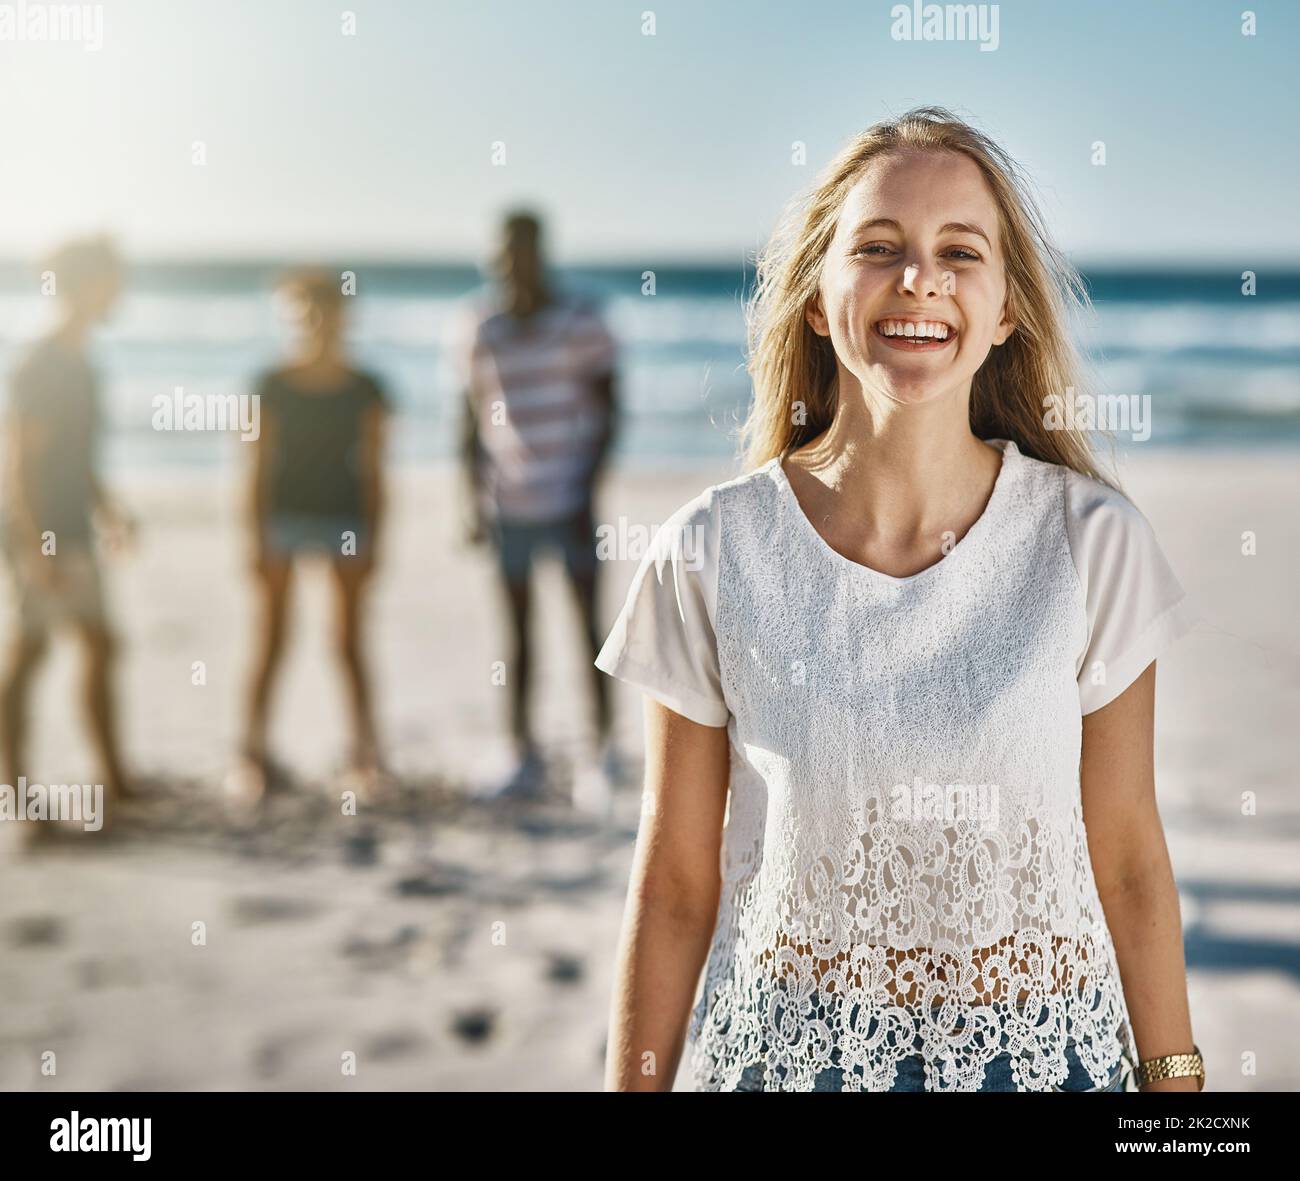 Non puoi fare a meno di sorridere quando il sole splende. Ritratto di una giovane donna felice in posa sulla spiaggia con i suoi amici sullo sfondo. Foto Stock